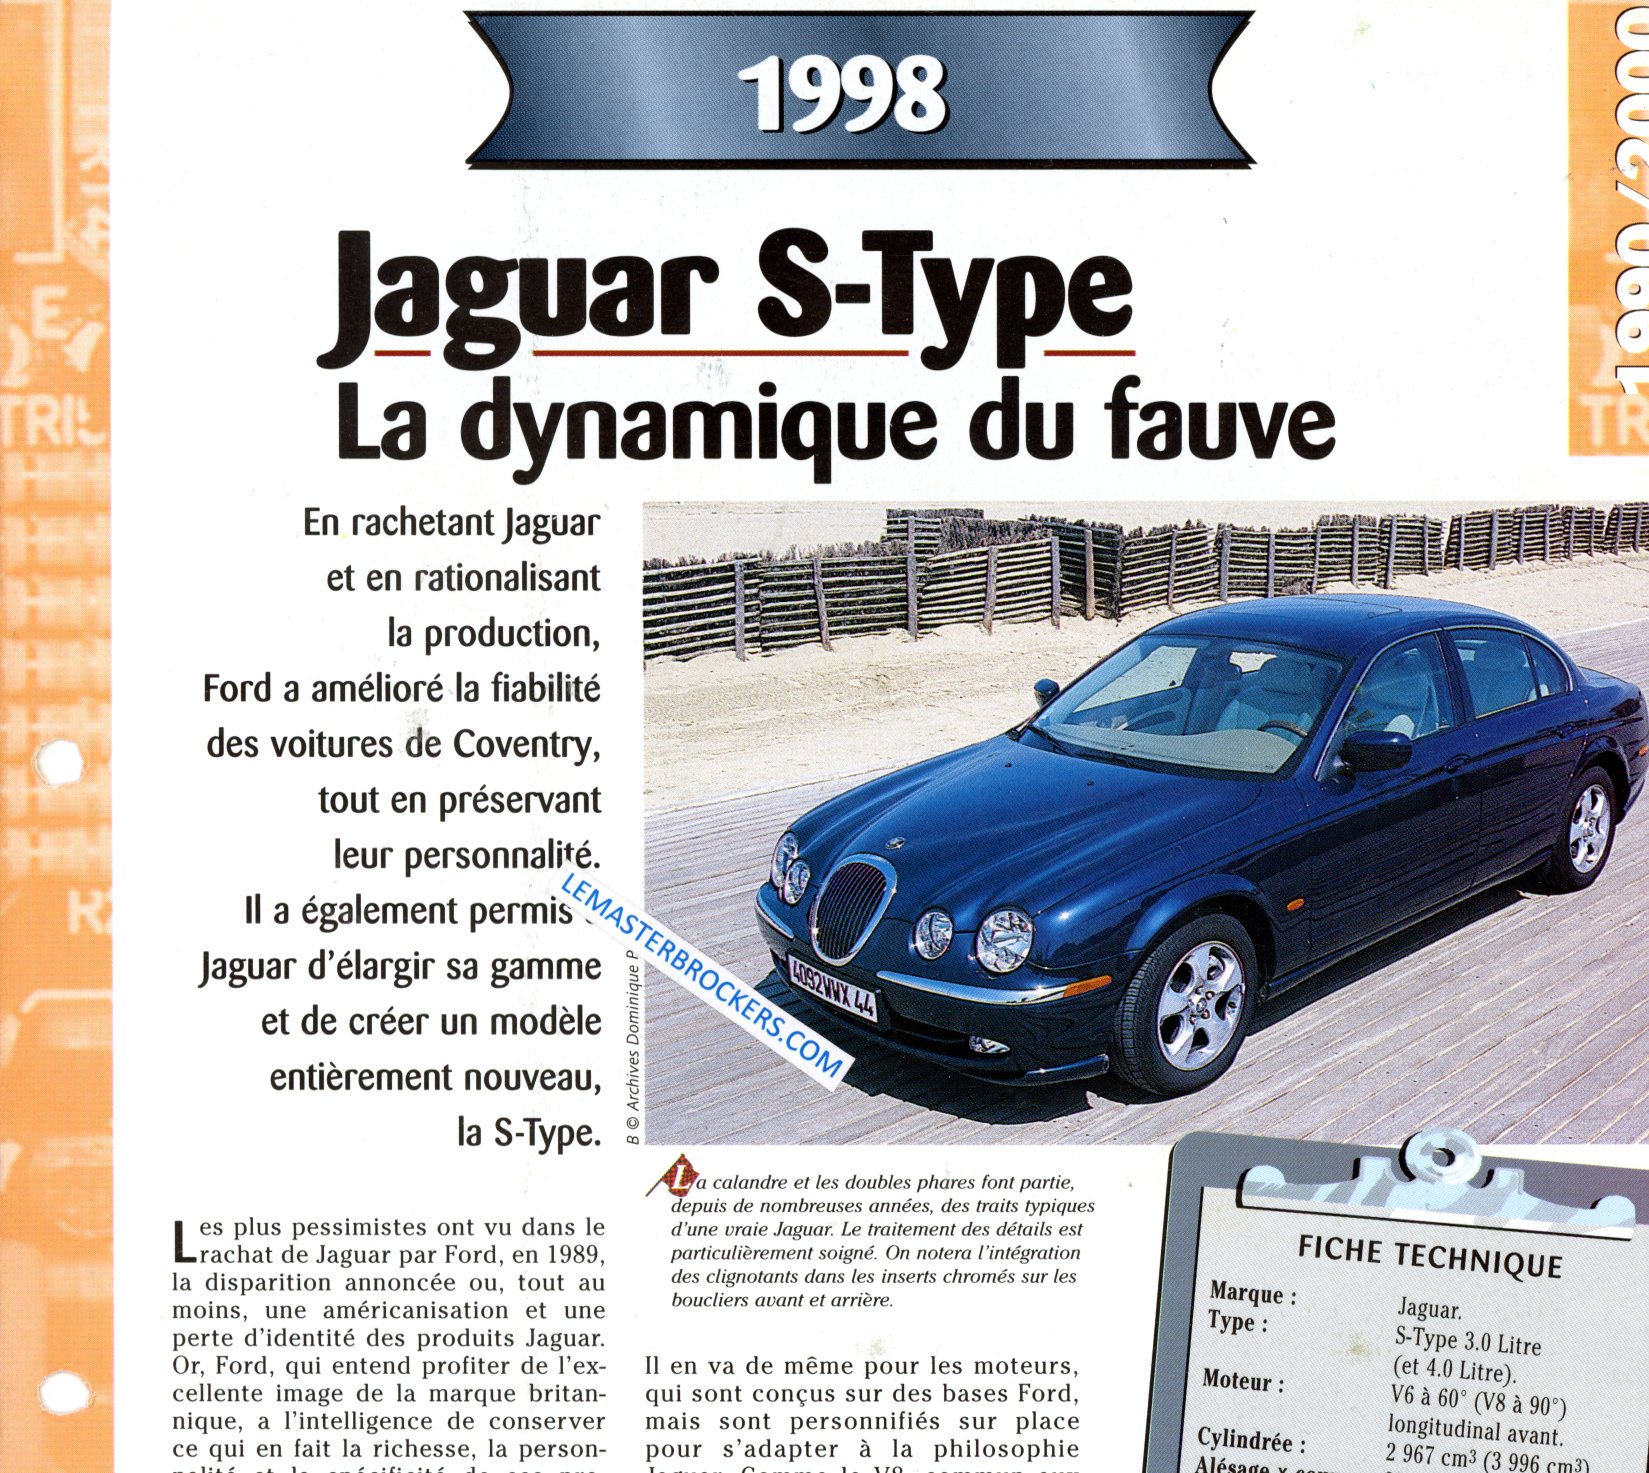 JAGUAR S-TYPE 1998 FICHE TECHNIQUE